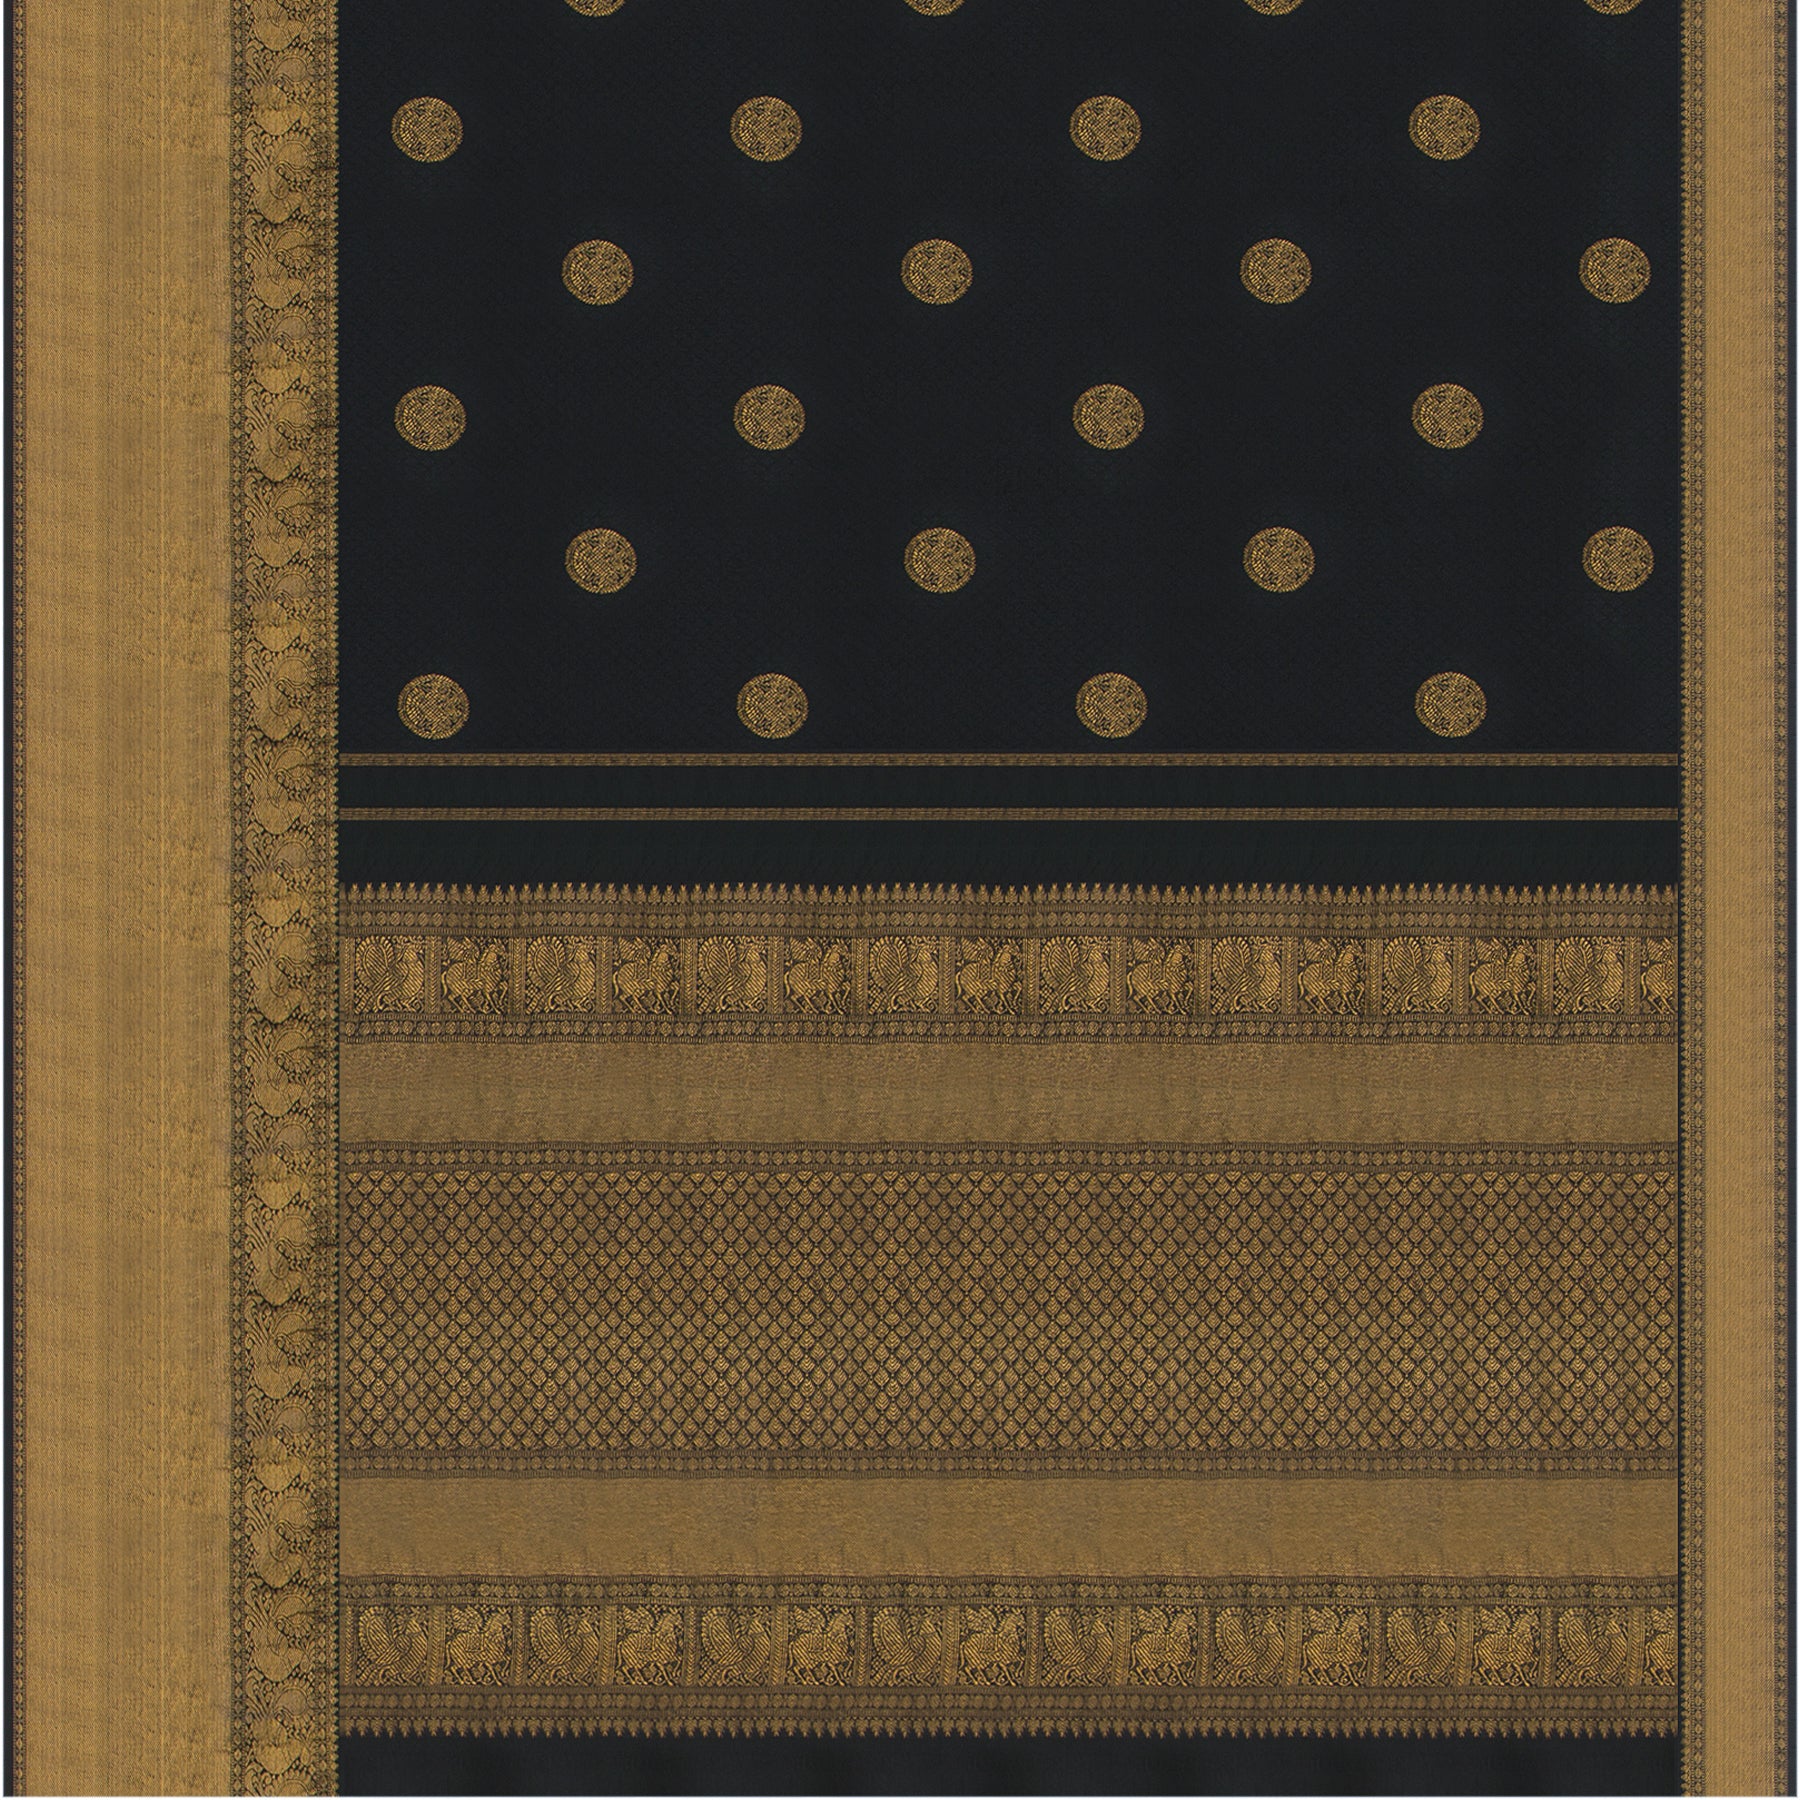 Kanakavalli Kanjivaram Silk Sari 21-599-HS001-02717 - Full View